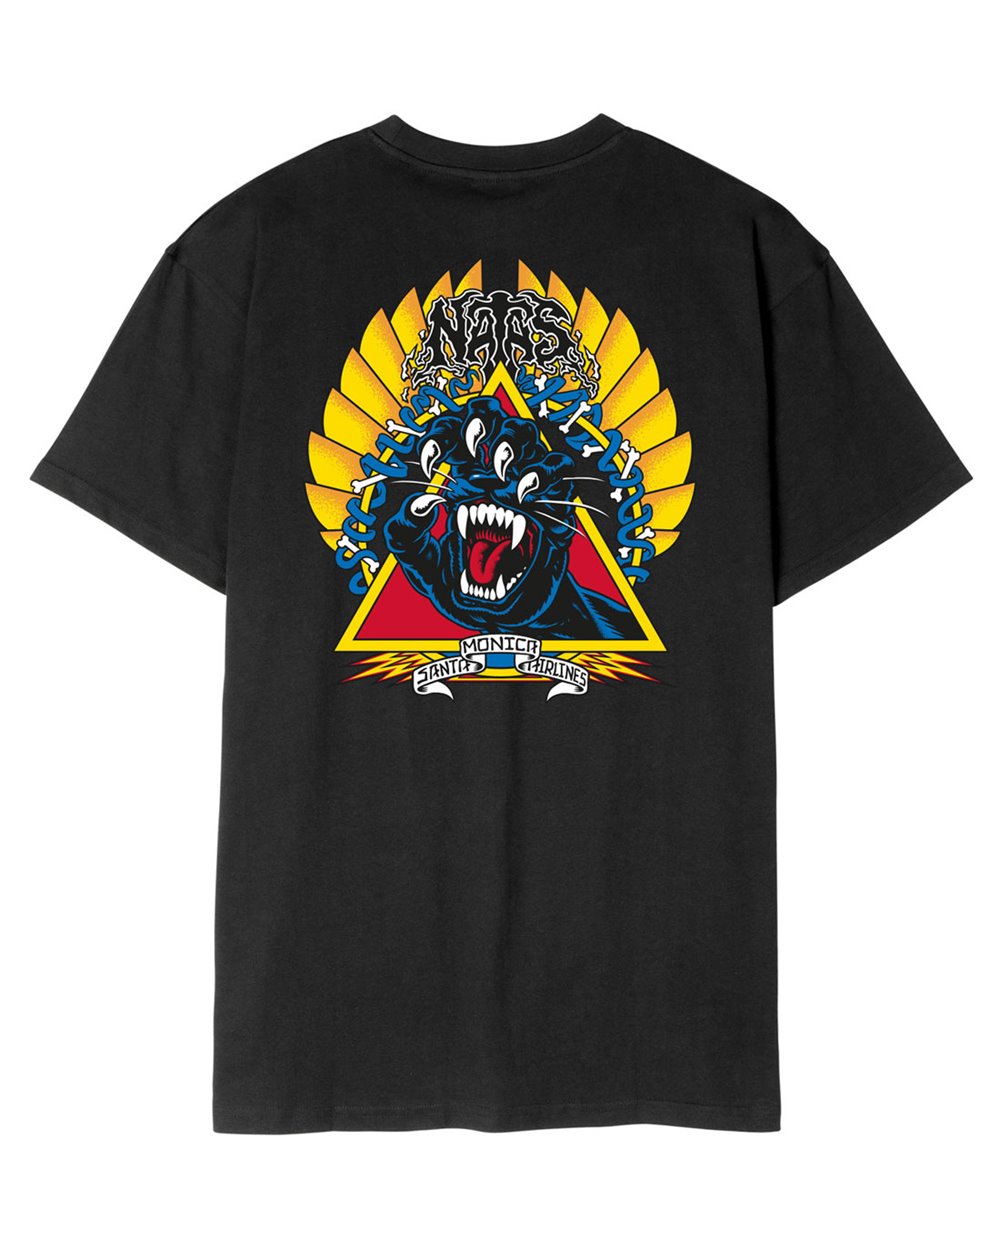 Santa Cruz T-Shirt Homme Natas Screaming Panther (Black)